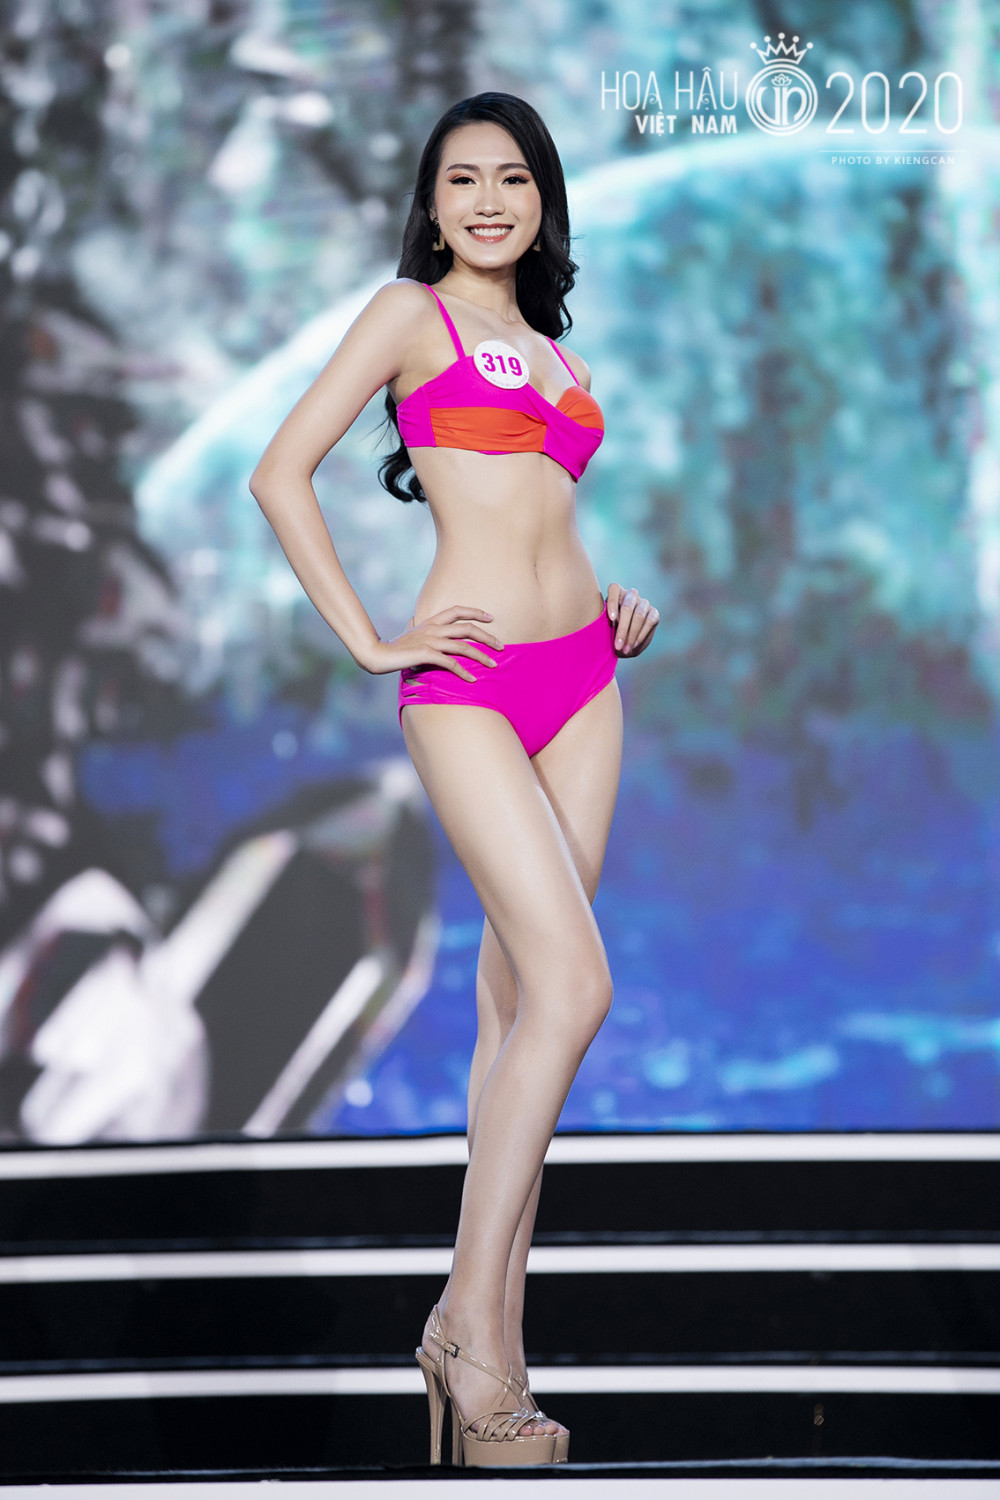 Doãn Hải My sinh năm 2001 đến từ Hà Nội luôn nằm trong top những thí sinh Hoa hậu Việt Nam 2020 nổi bật nhất. Ảnh: Hoa hậu Việt Nam